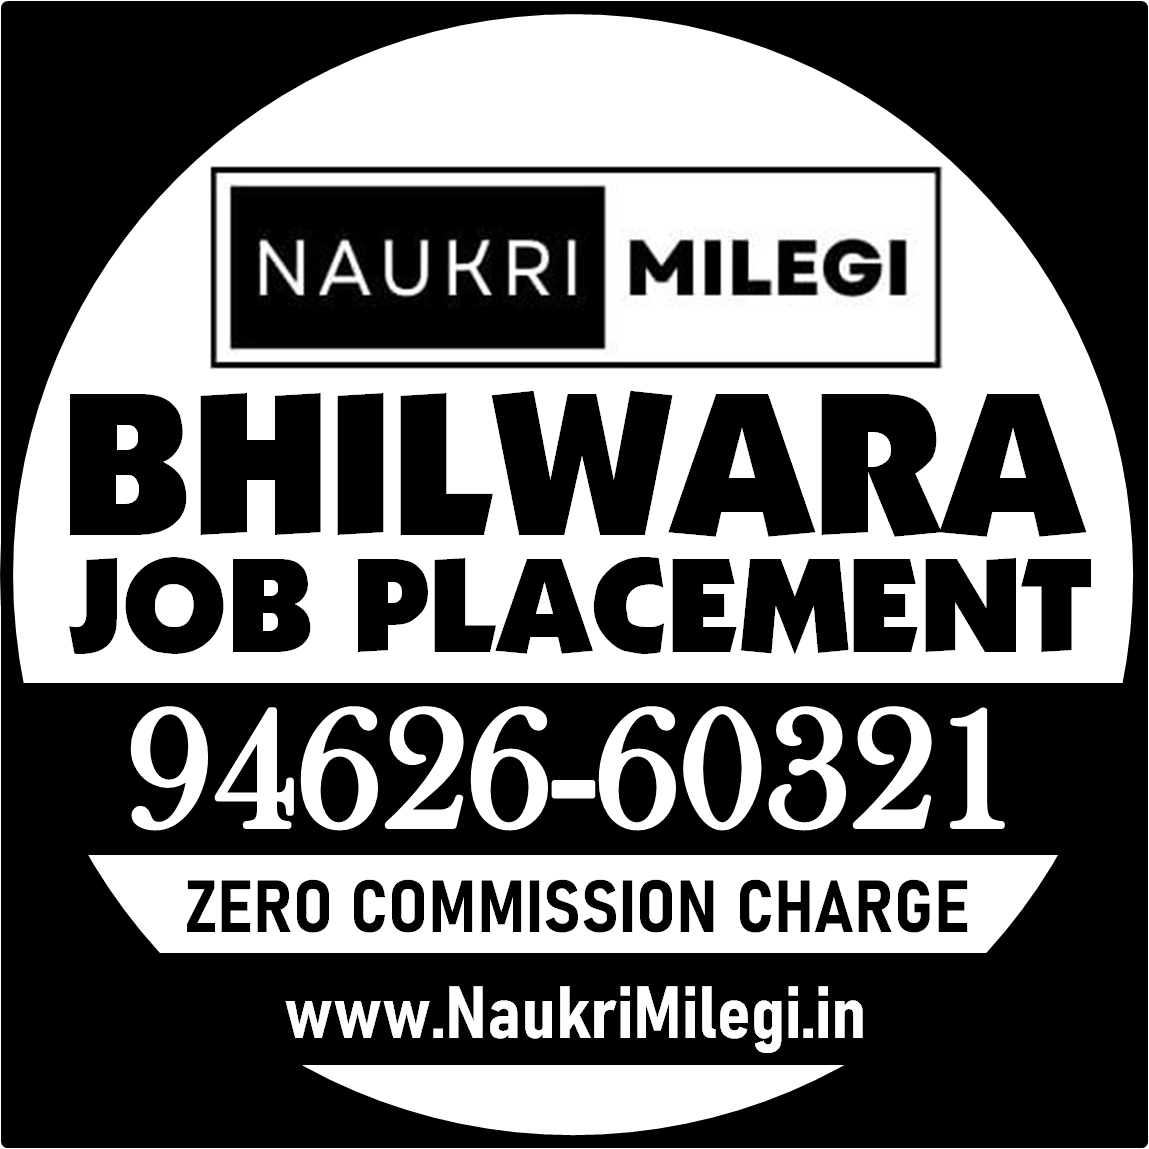 Bhilwara Job Placement